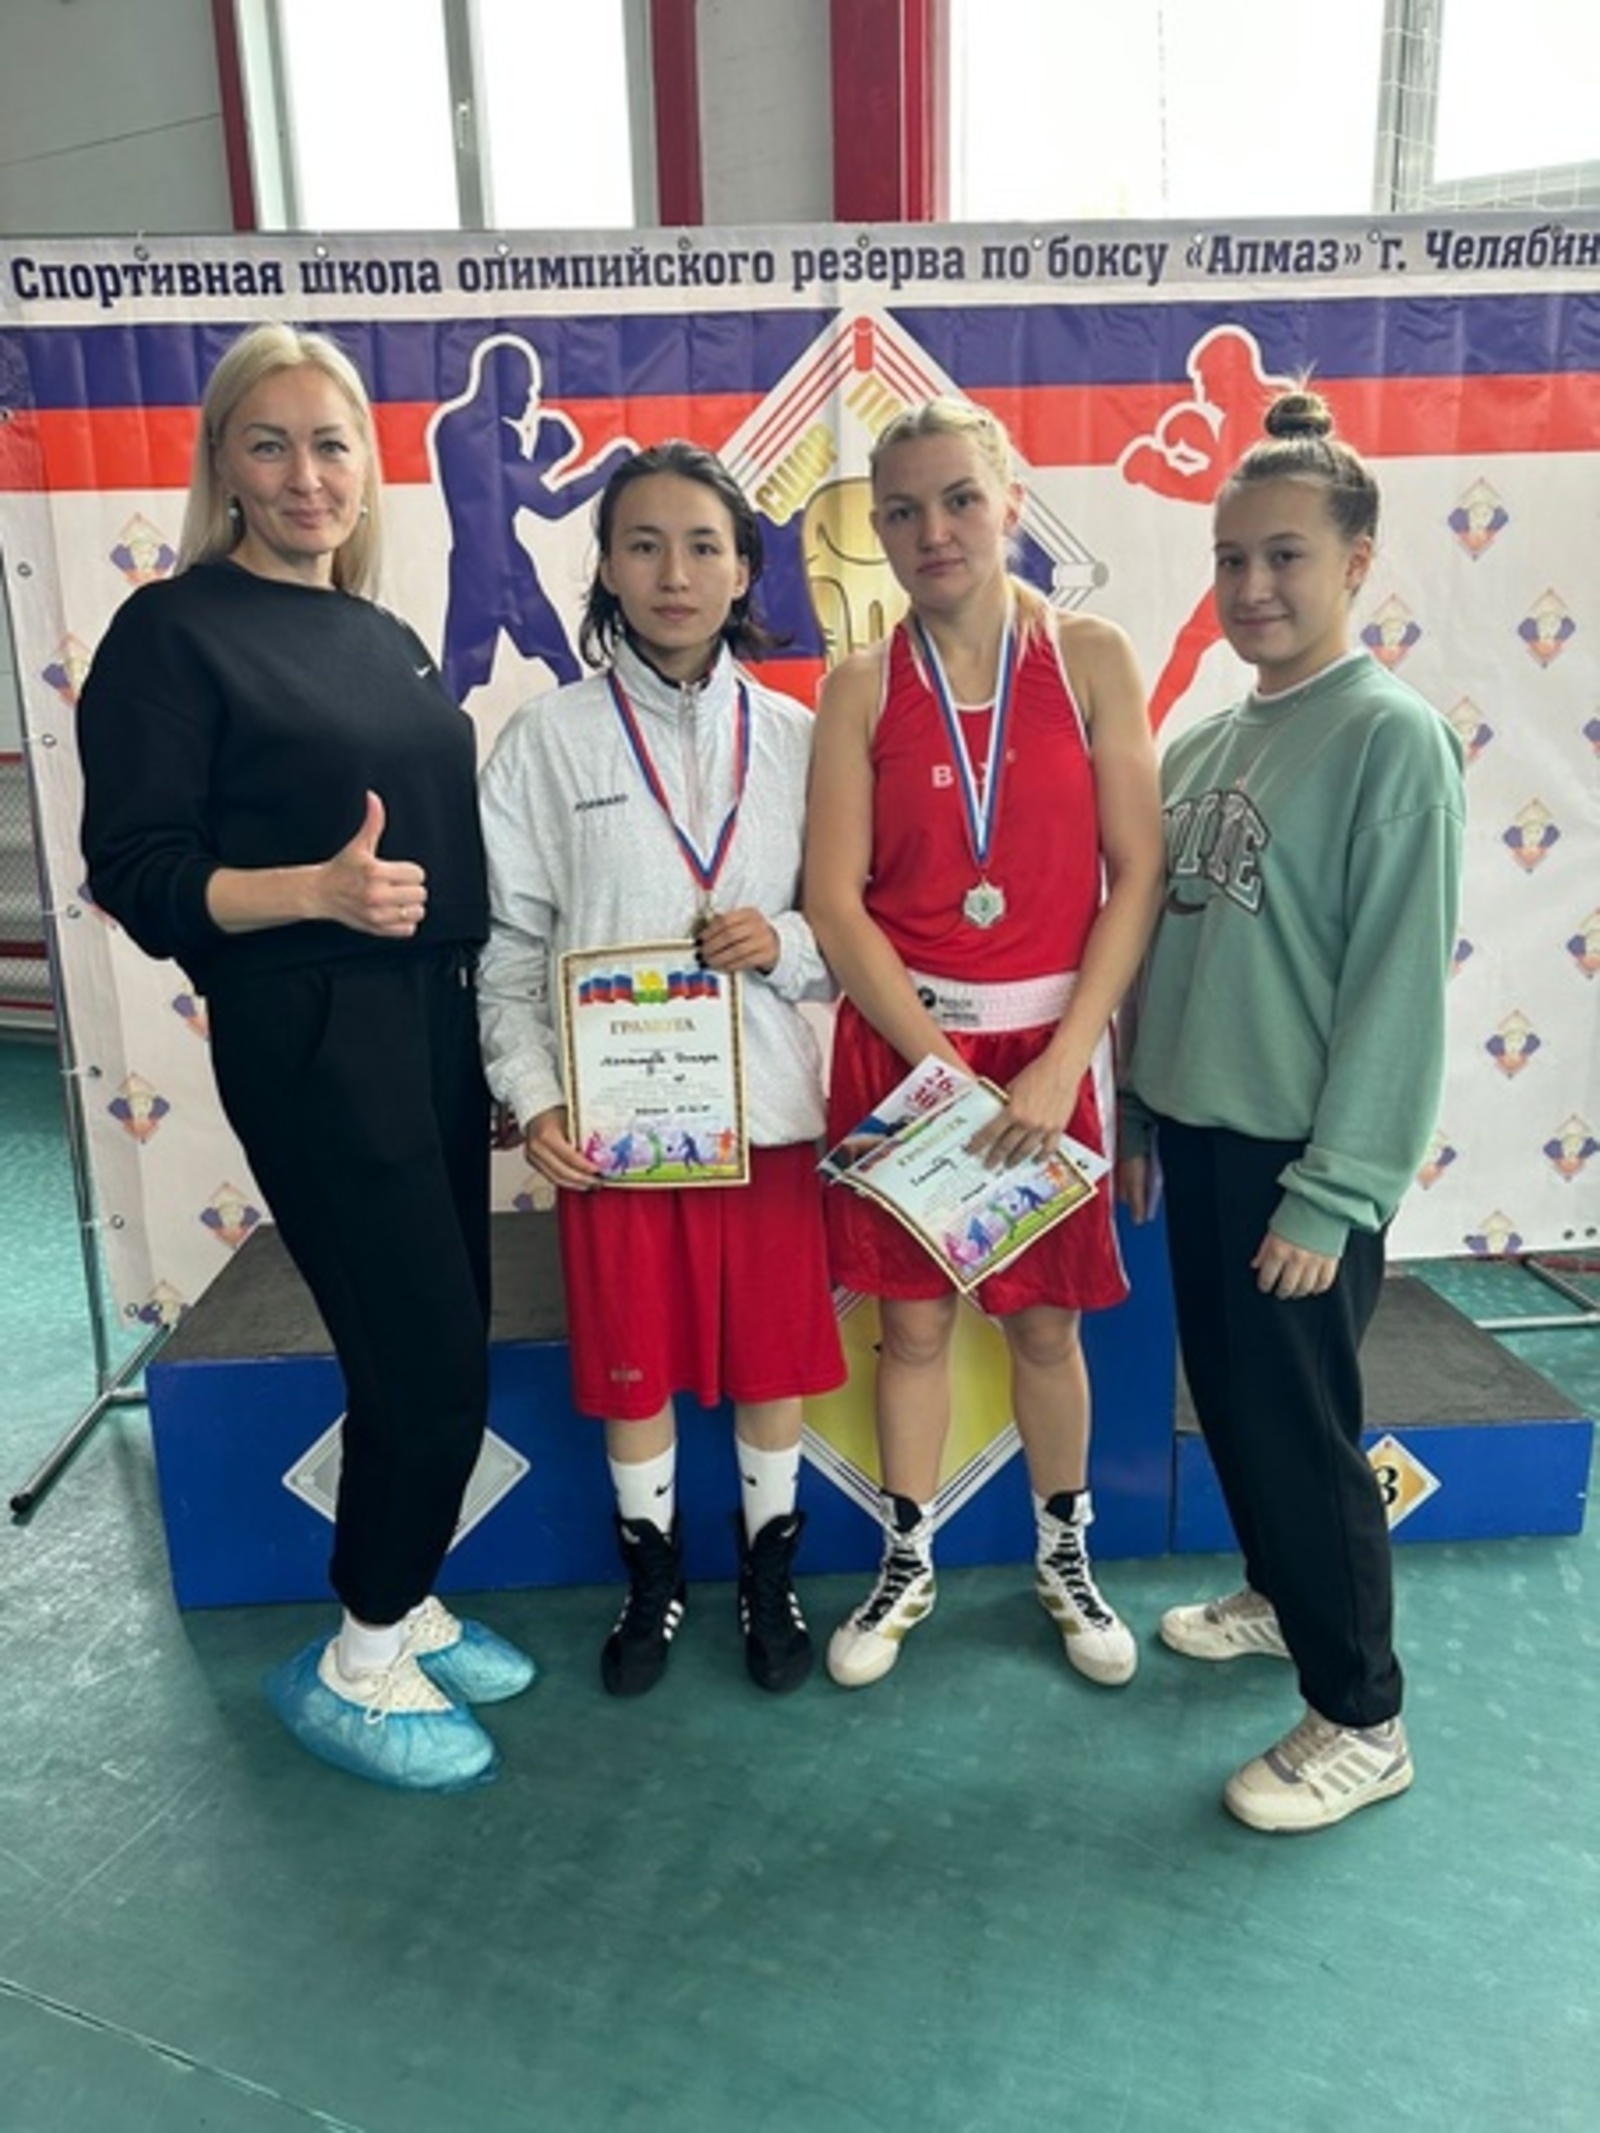 Учитель физкультуры из Стерлитама-ка стала бронзовым призёром в турнире по боксу